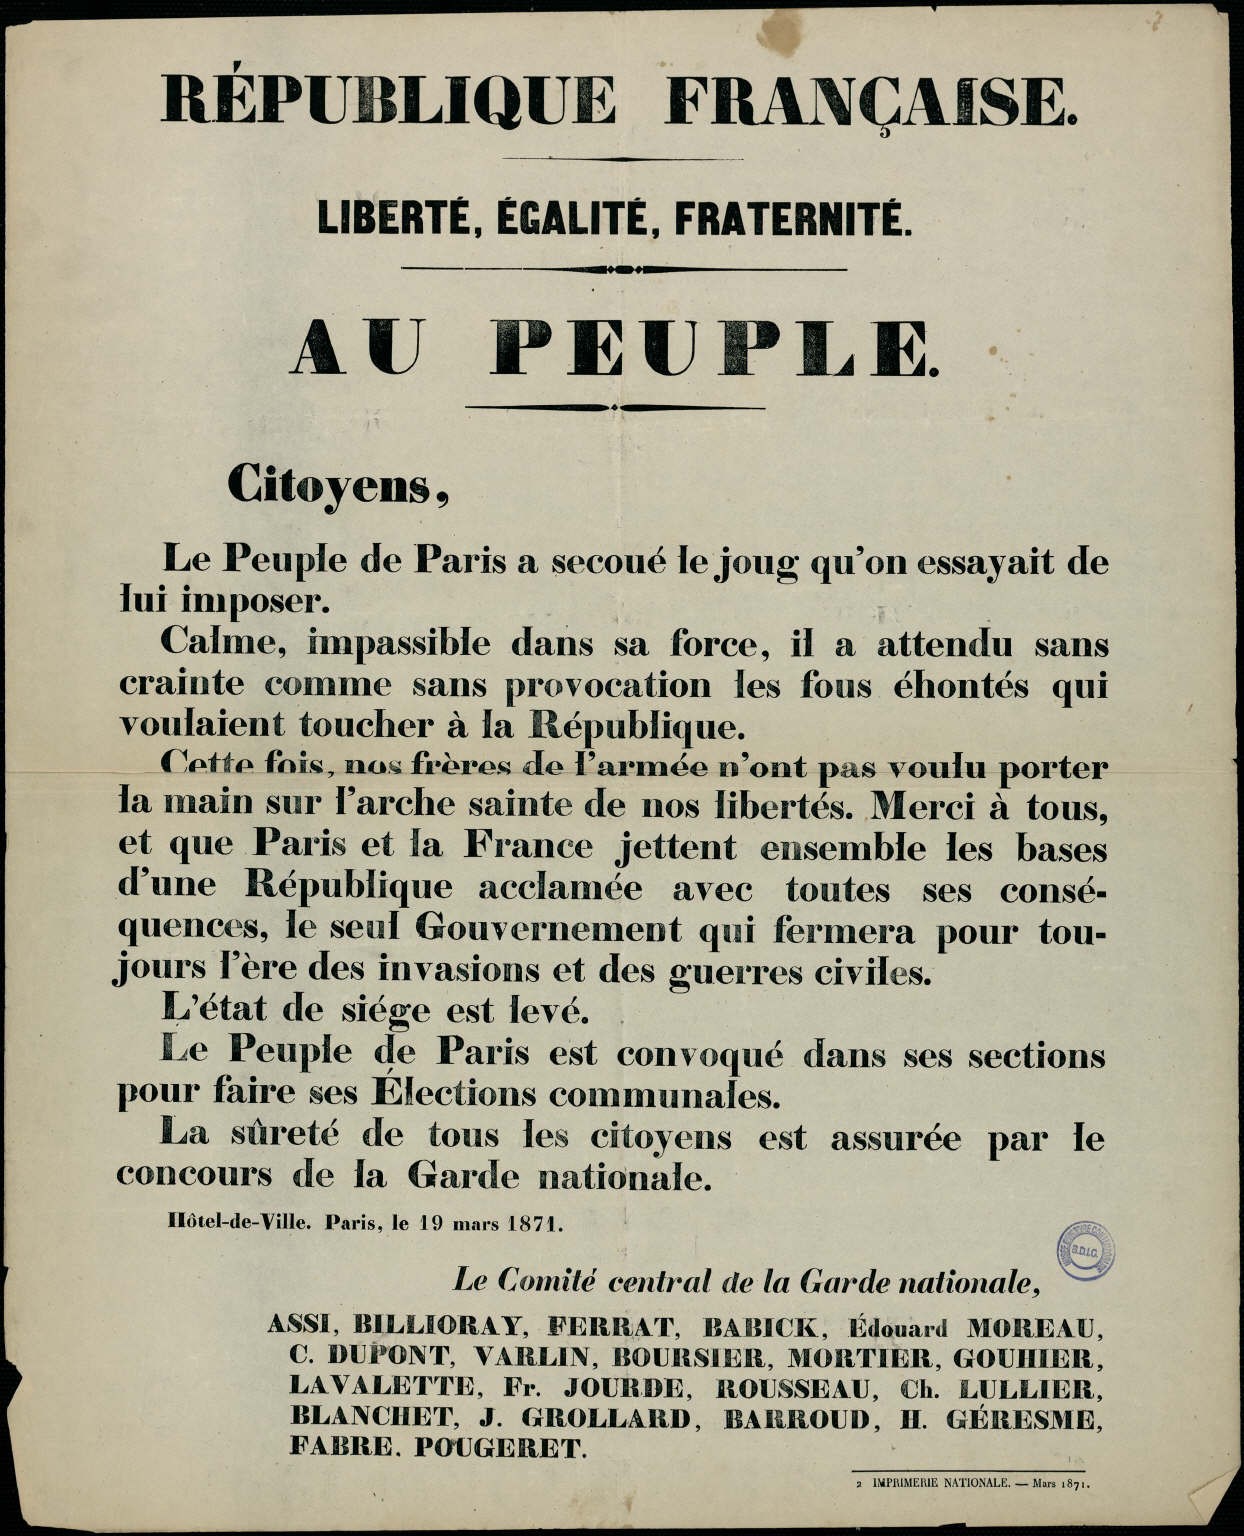 Affiche de la Commune de Paris du 19 mars 1871 - Le Comité central de la Garde nationale au Peuple.